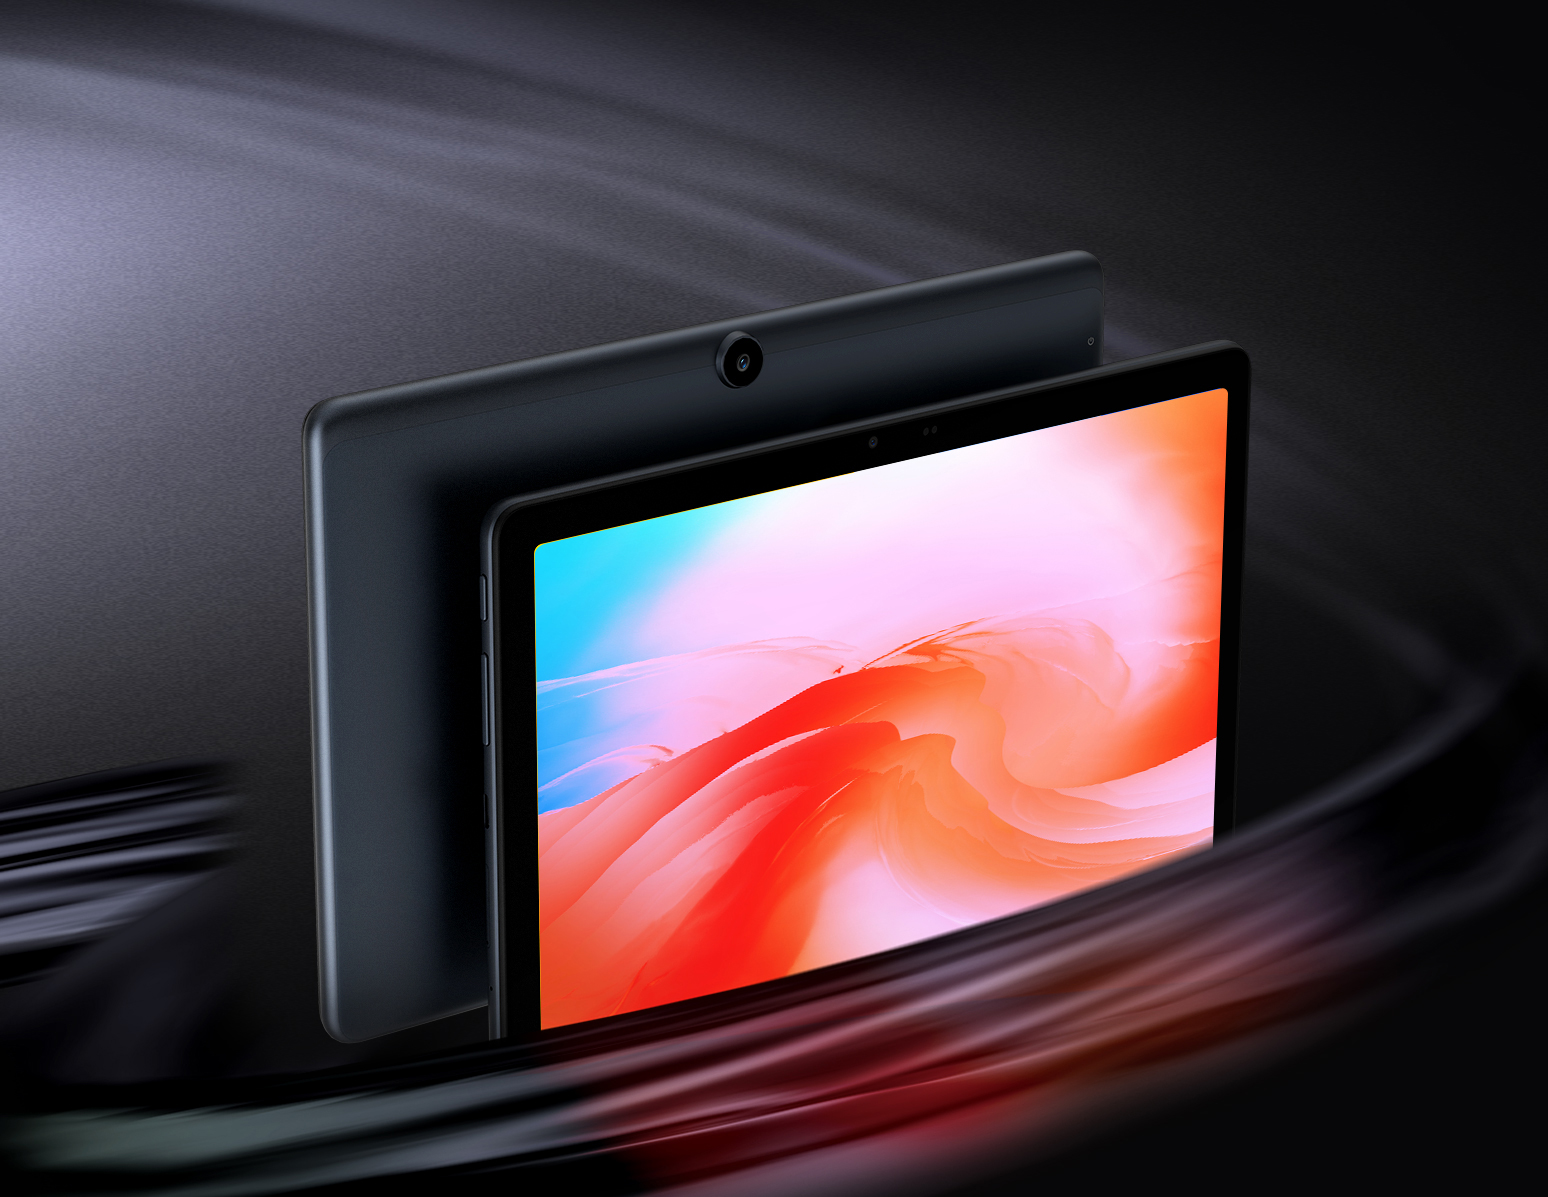 ข้อมูลเพิ่มเติมของ 【NEWEST】Alldocube Smile X Tablet 10.1 inch FHD Screen T610 Octa-Core 4GB RAM 64GB ROM Android 11 Dual Band WiFi Dual 4G Phone Call Tablet PC